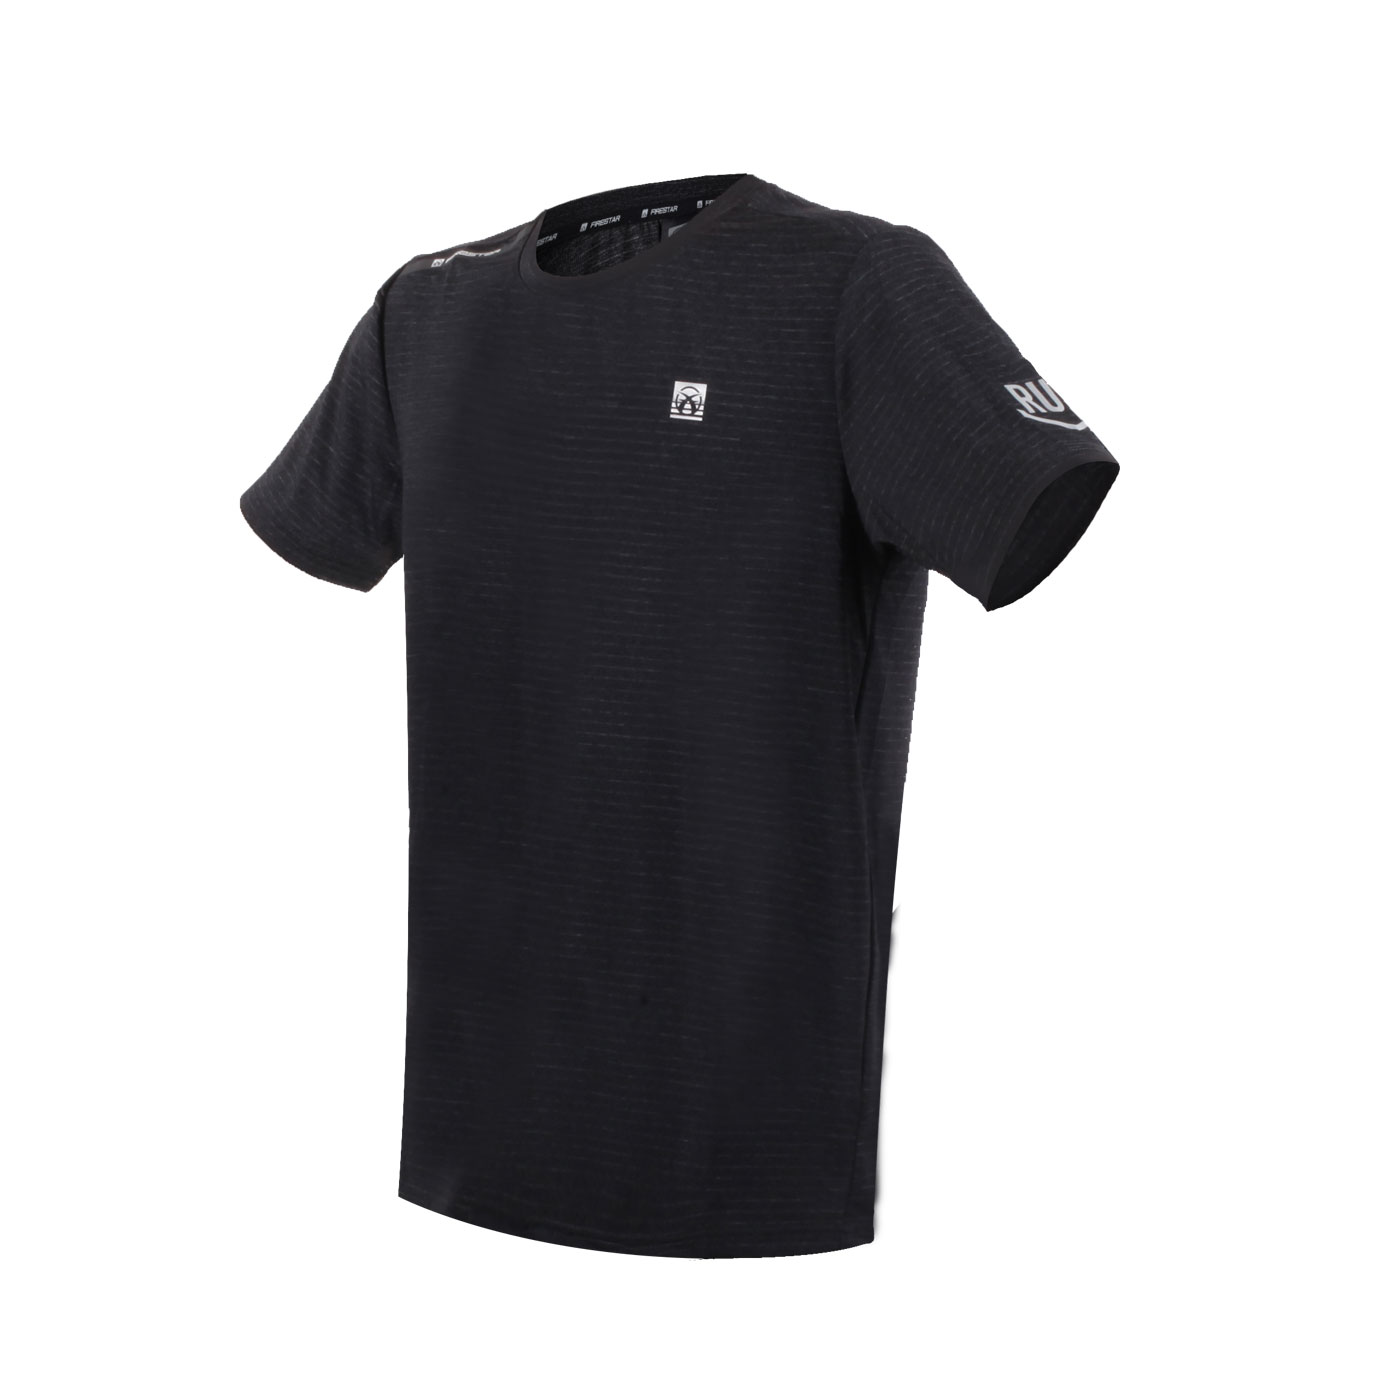 FIRESTAR 男款彈性圓領短袖T恤  D3230-18